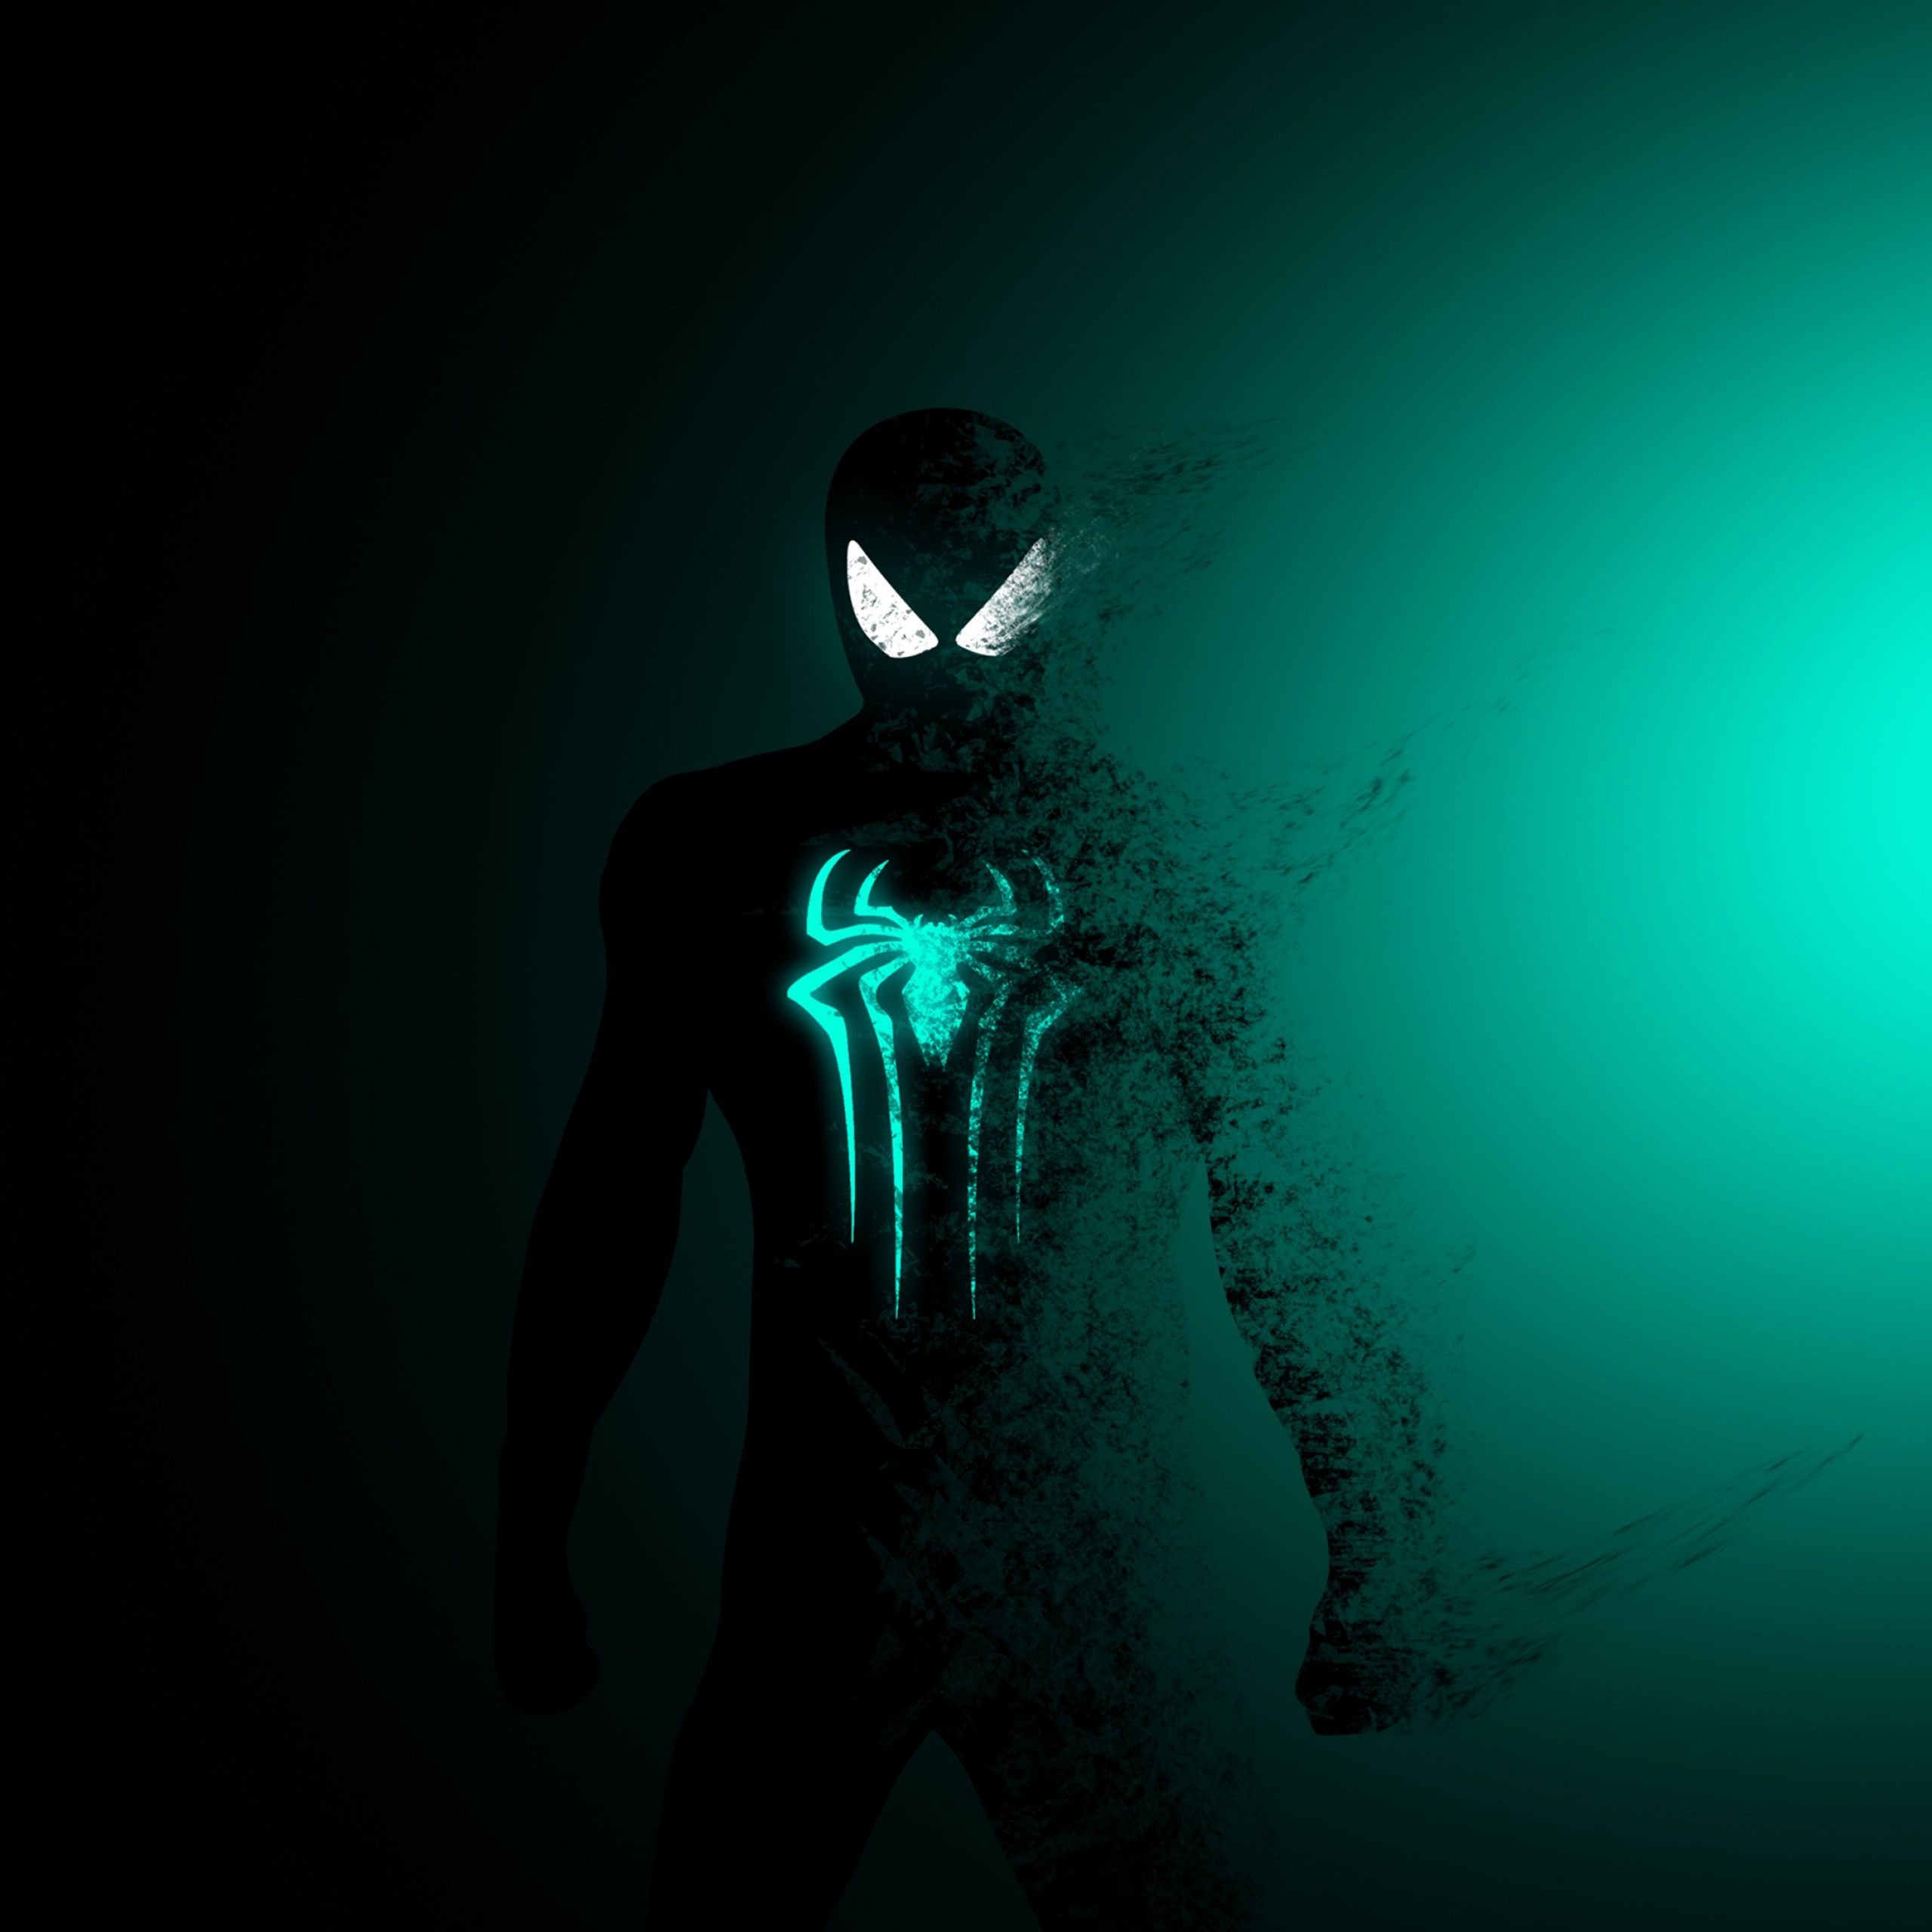  Spider-Man Hintergrundbild 2560x2560. Spider Man Wallpaper 4K, Dark, Cyan, Minimal, Graphics CGI